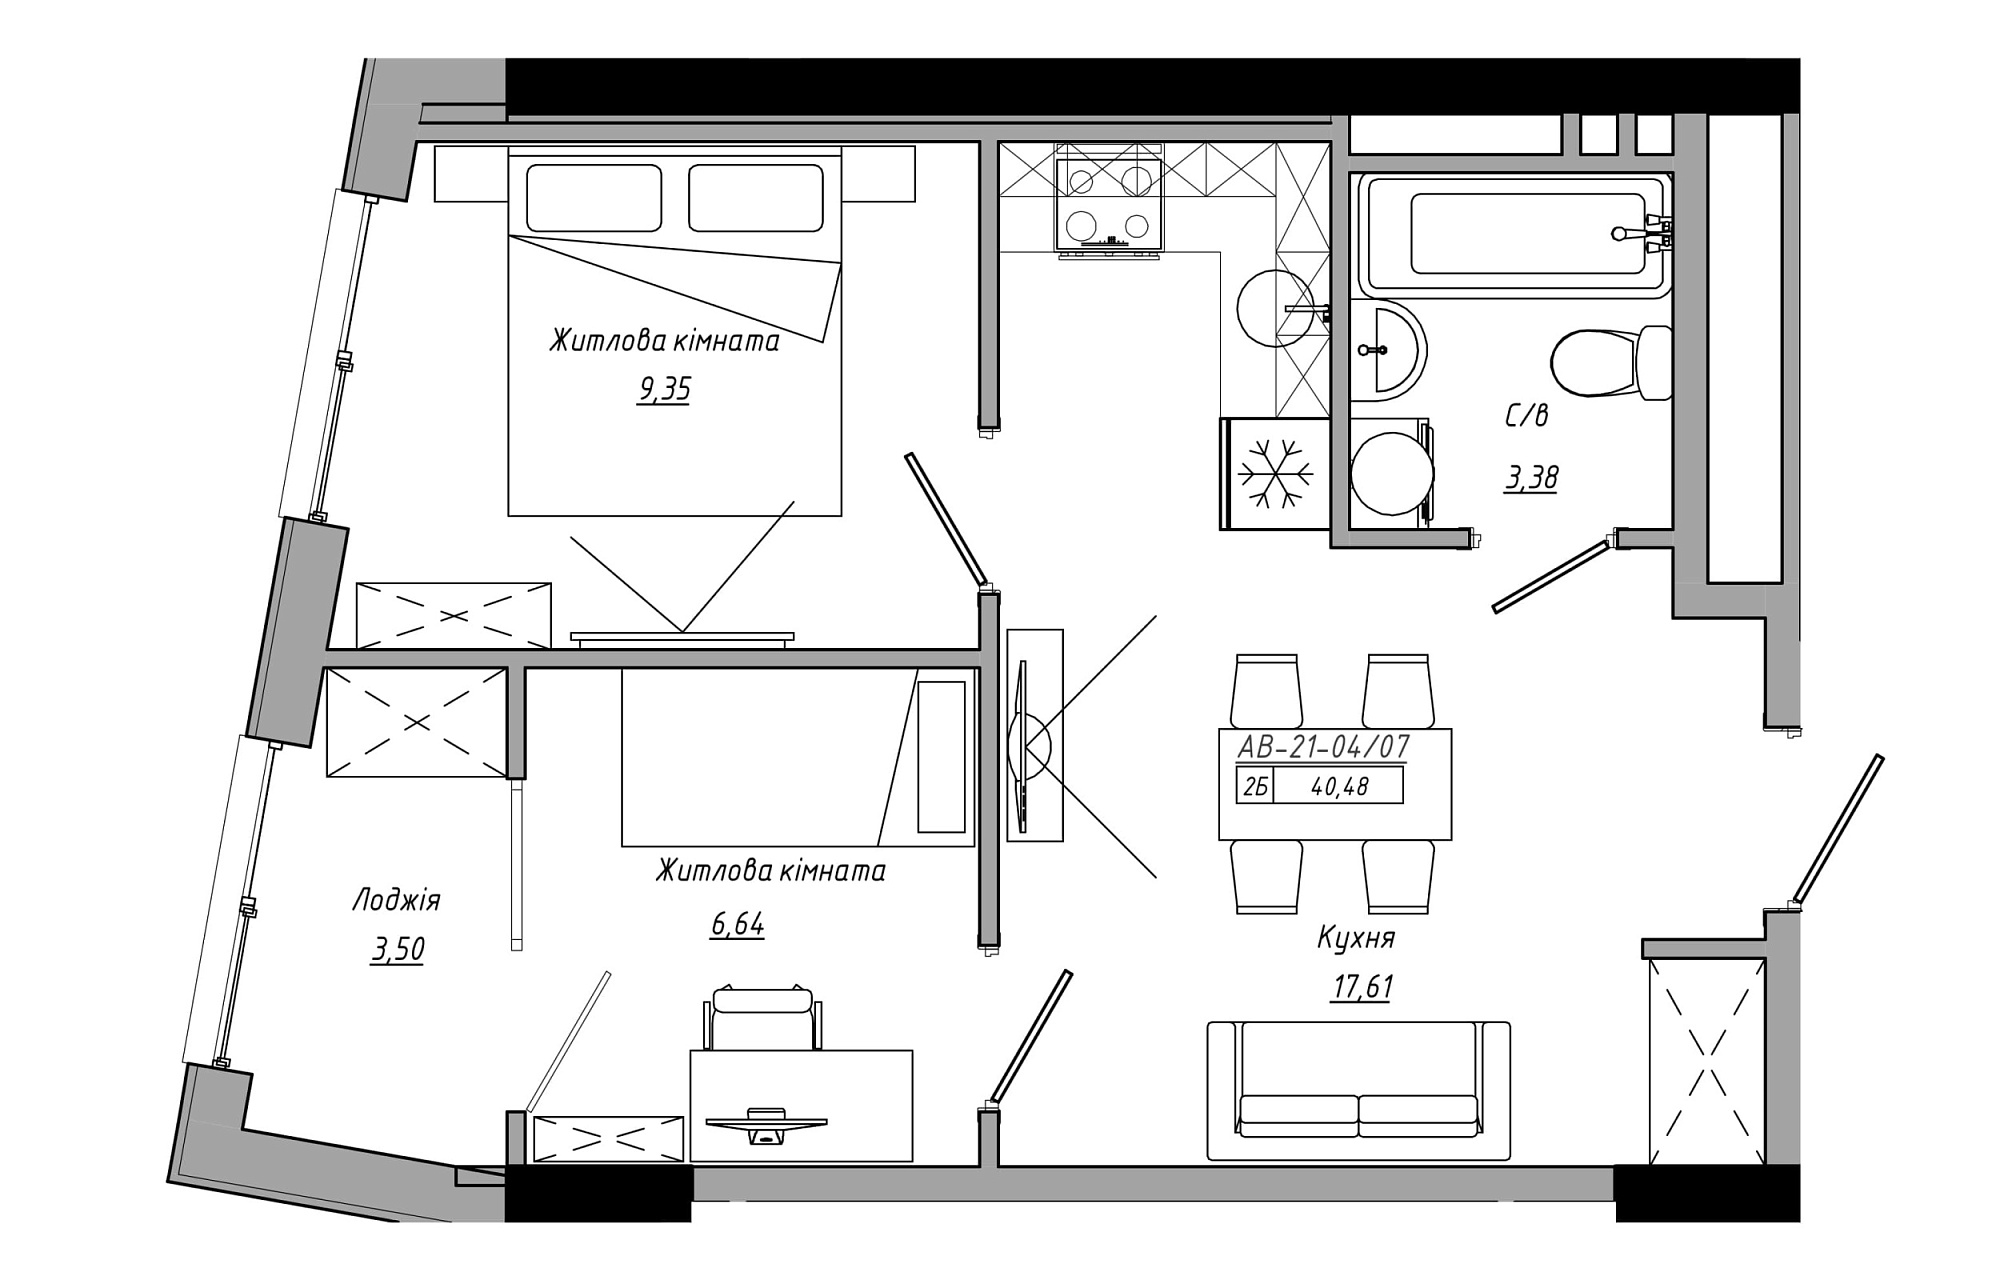 Планування 2-к квартира площею 40.48м2, AB-21-04/00007.